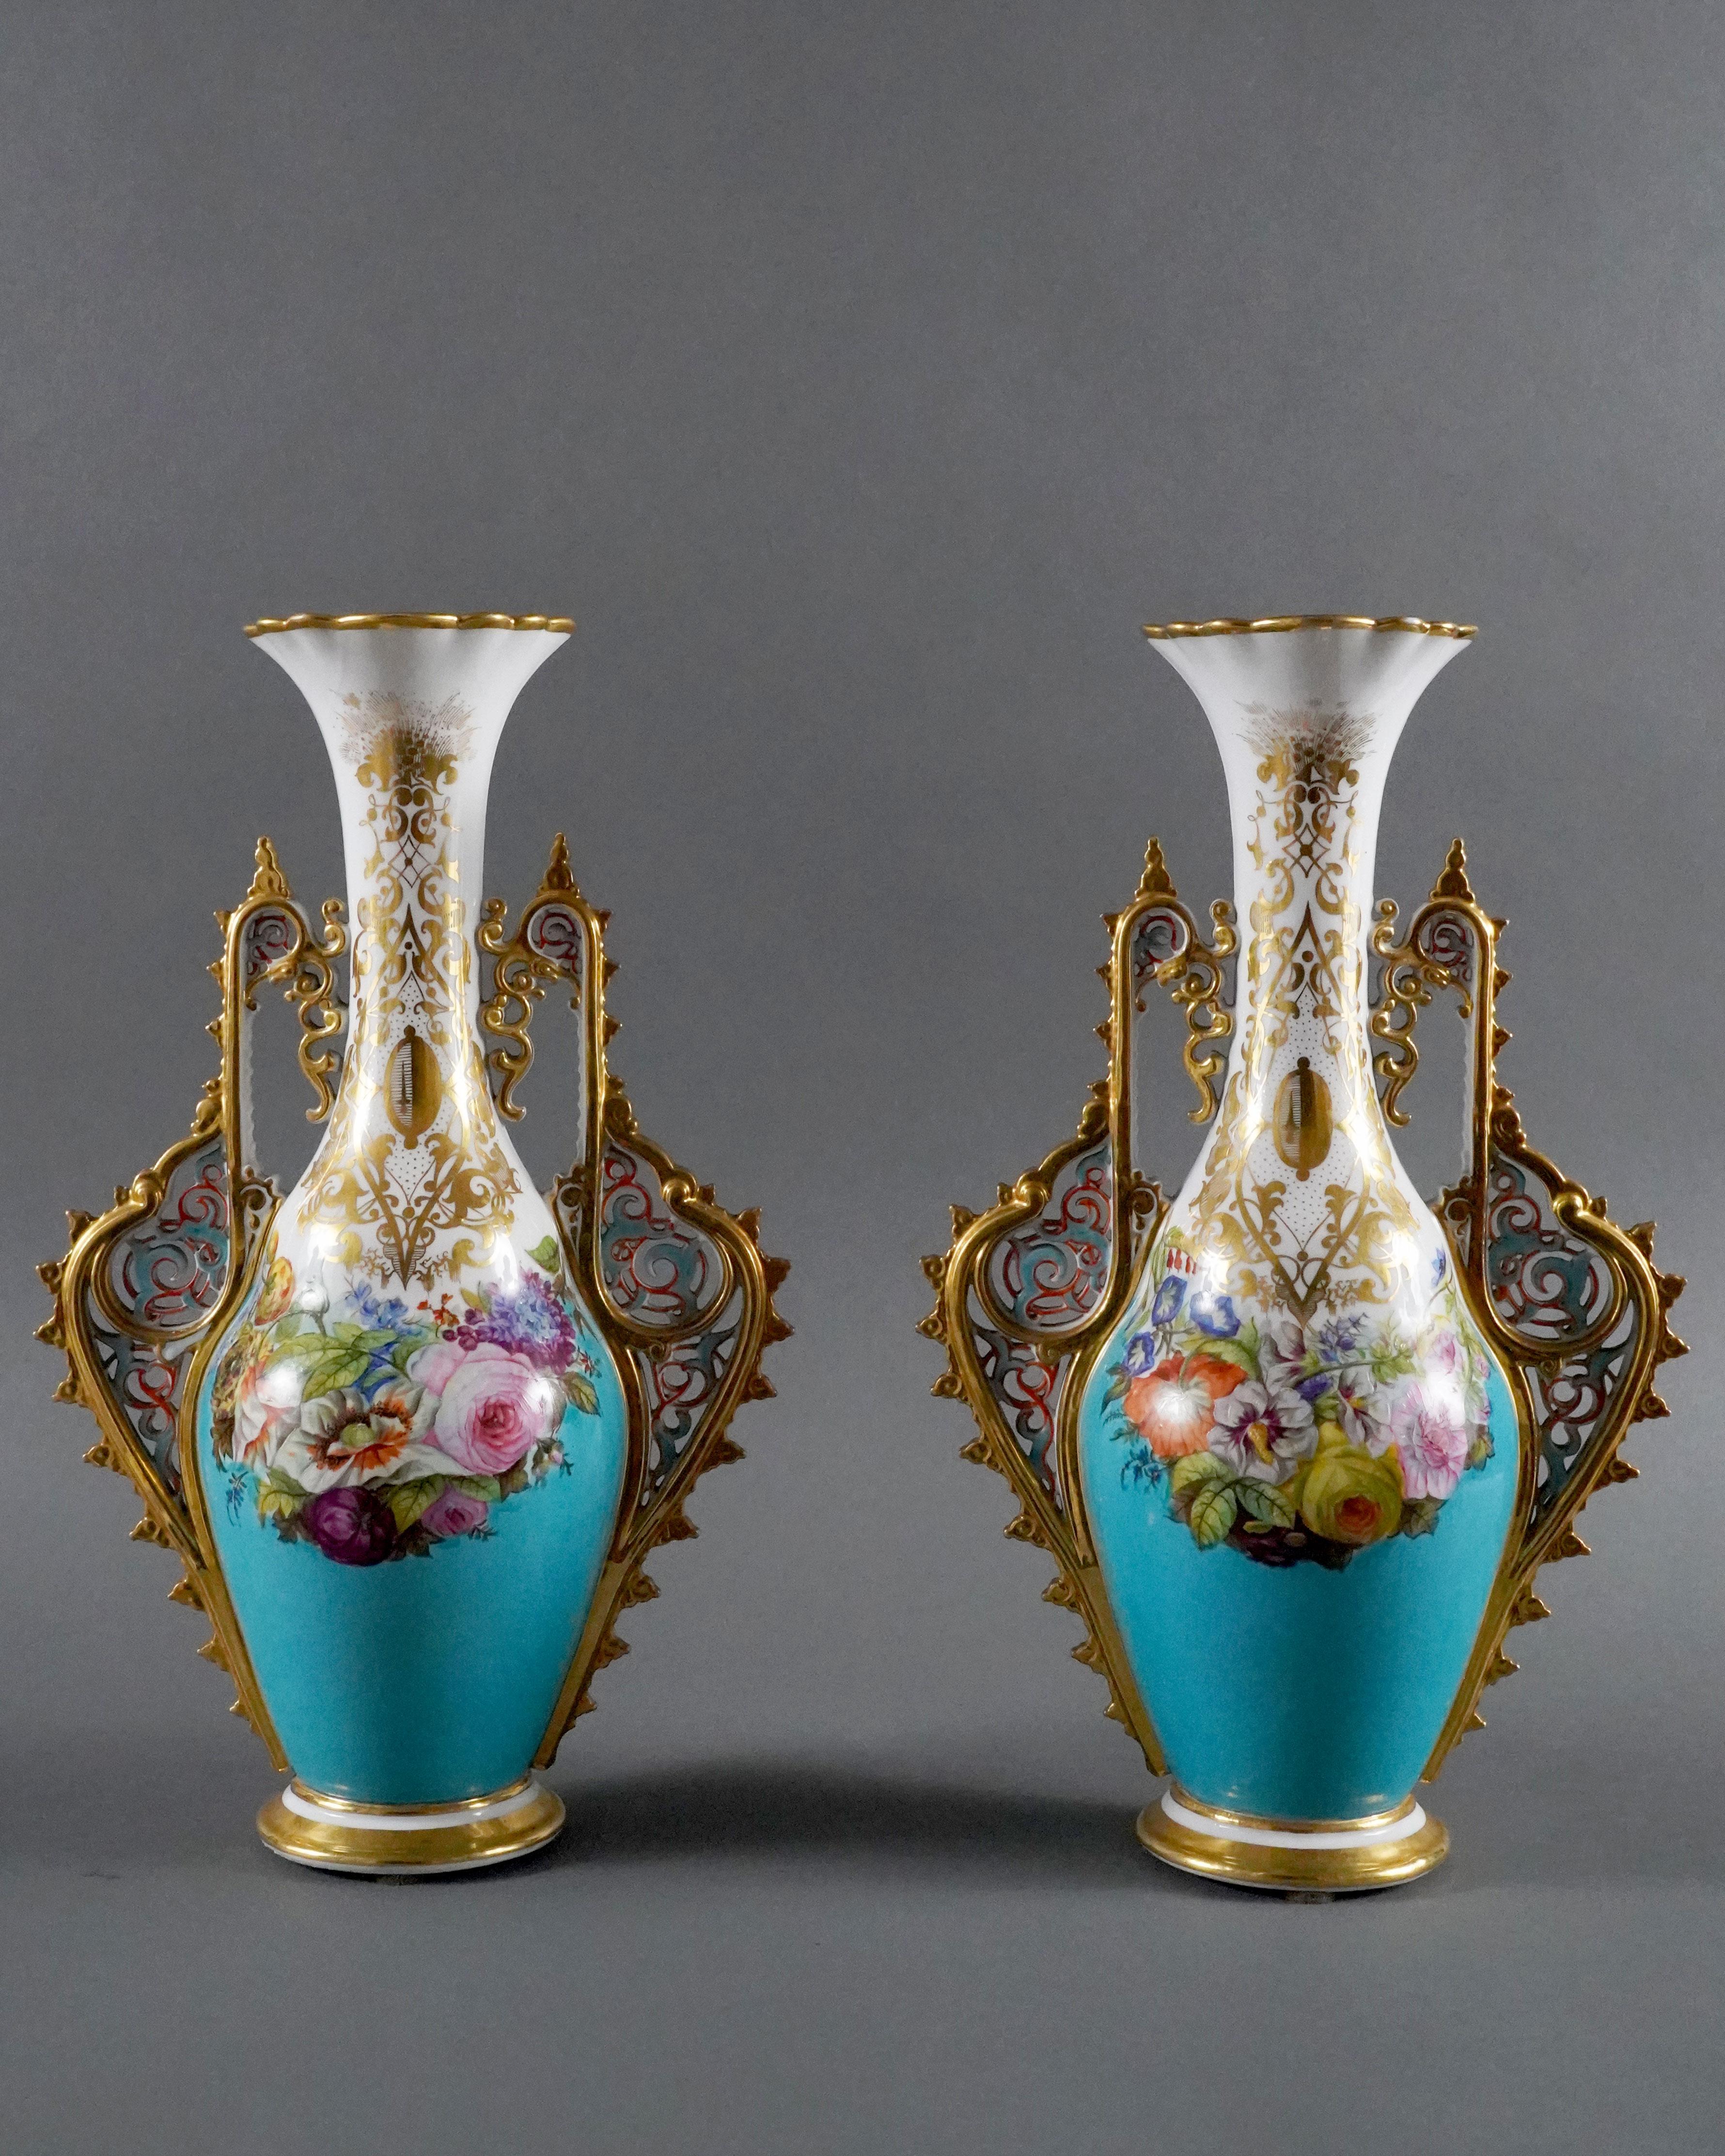 Belle paire de vases amphores en porcelaine blanche et bleue, richement décorés sur chaque face de belles compositions florales polychromes encadrées par des anses aux motifs ajourés de rinceaux orientaux inspirés des décors de l'Alhambra. Les cols